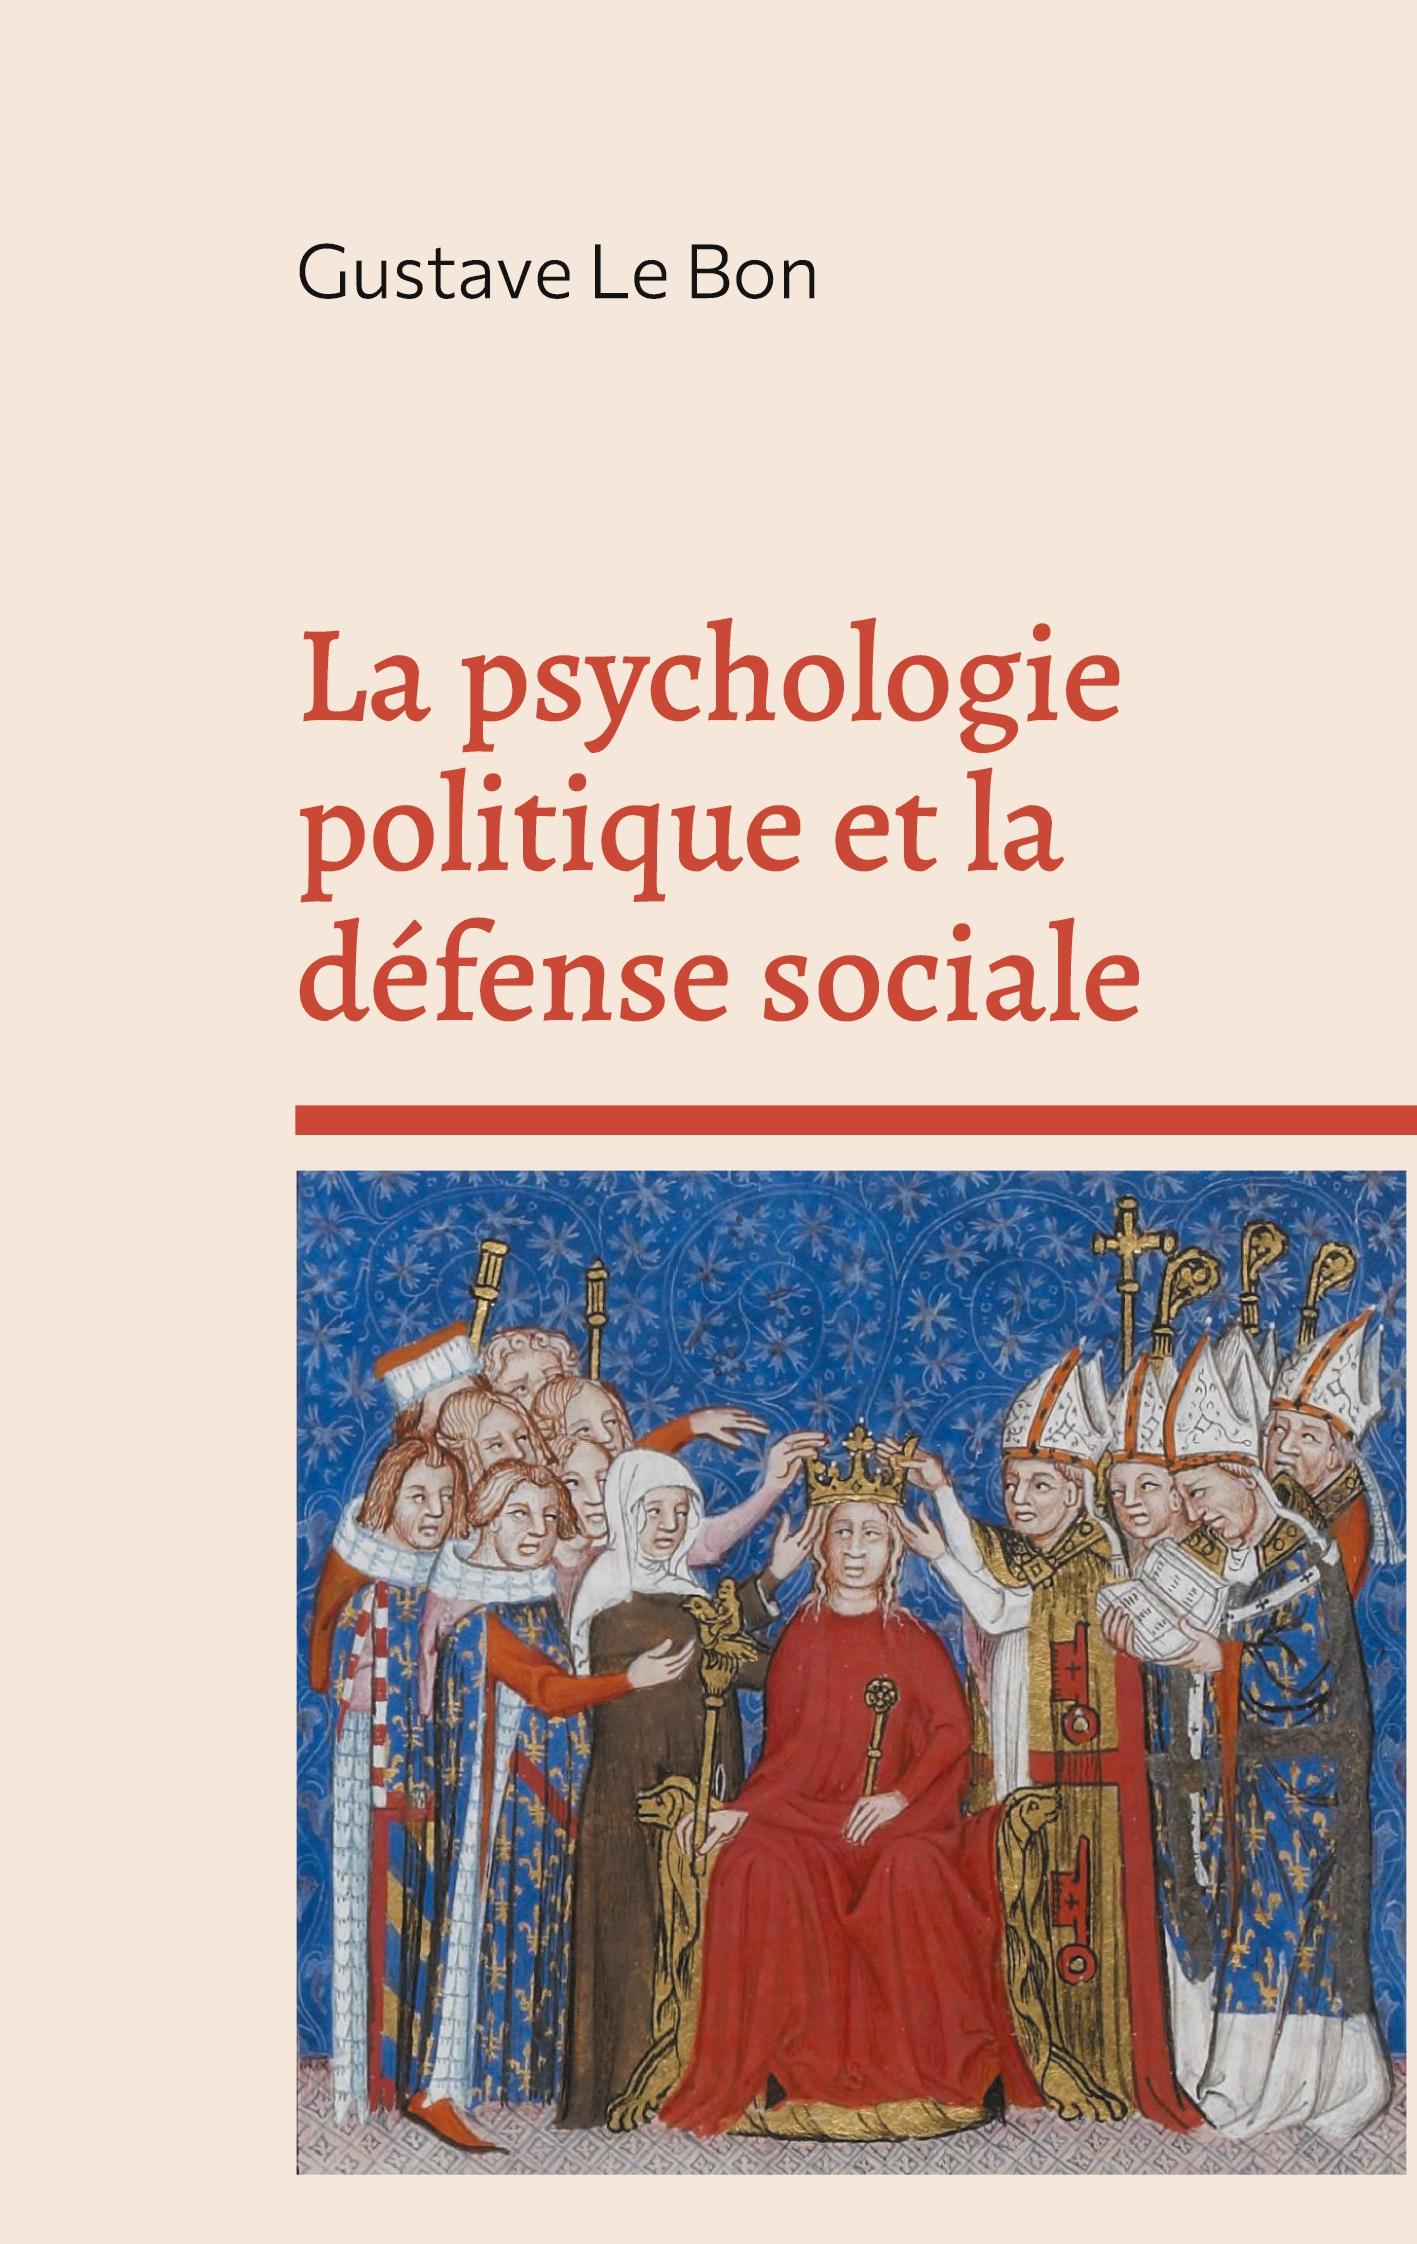 La psychologie politique et la defense sociale